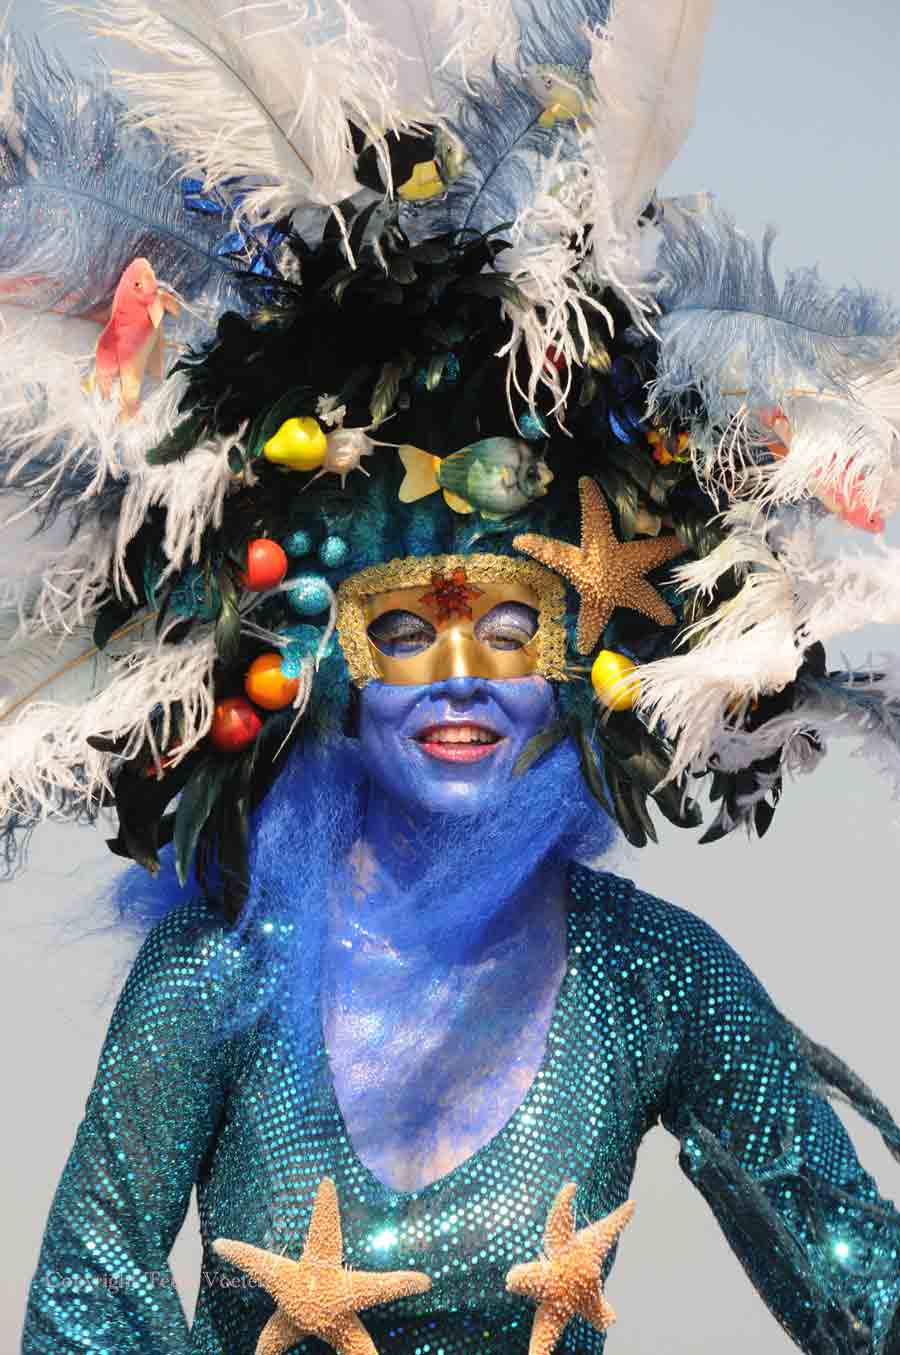 mermaid parade photo documentary